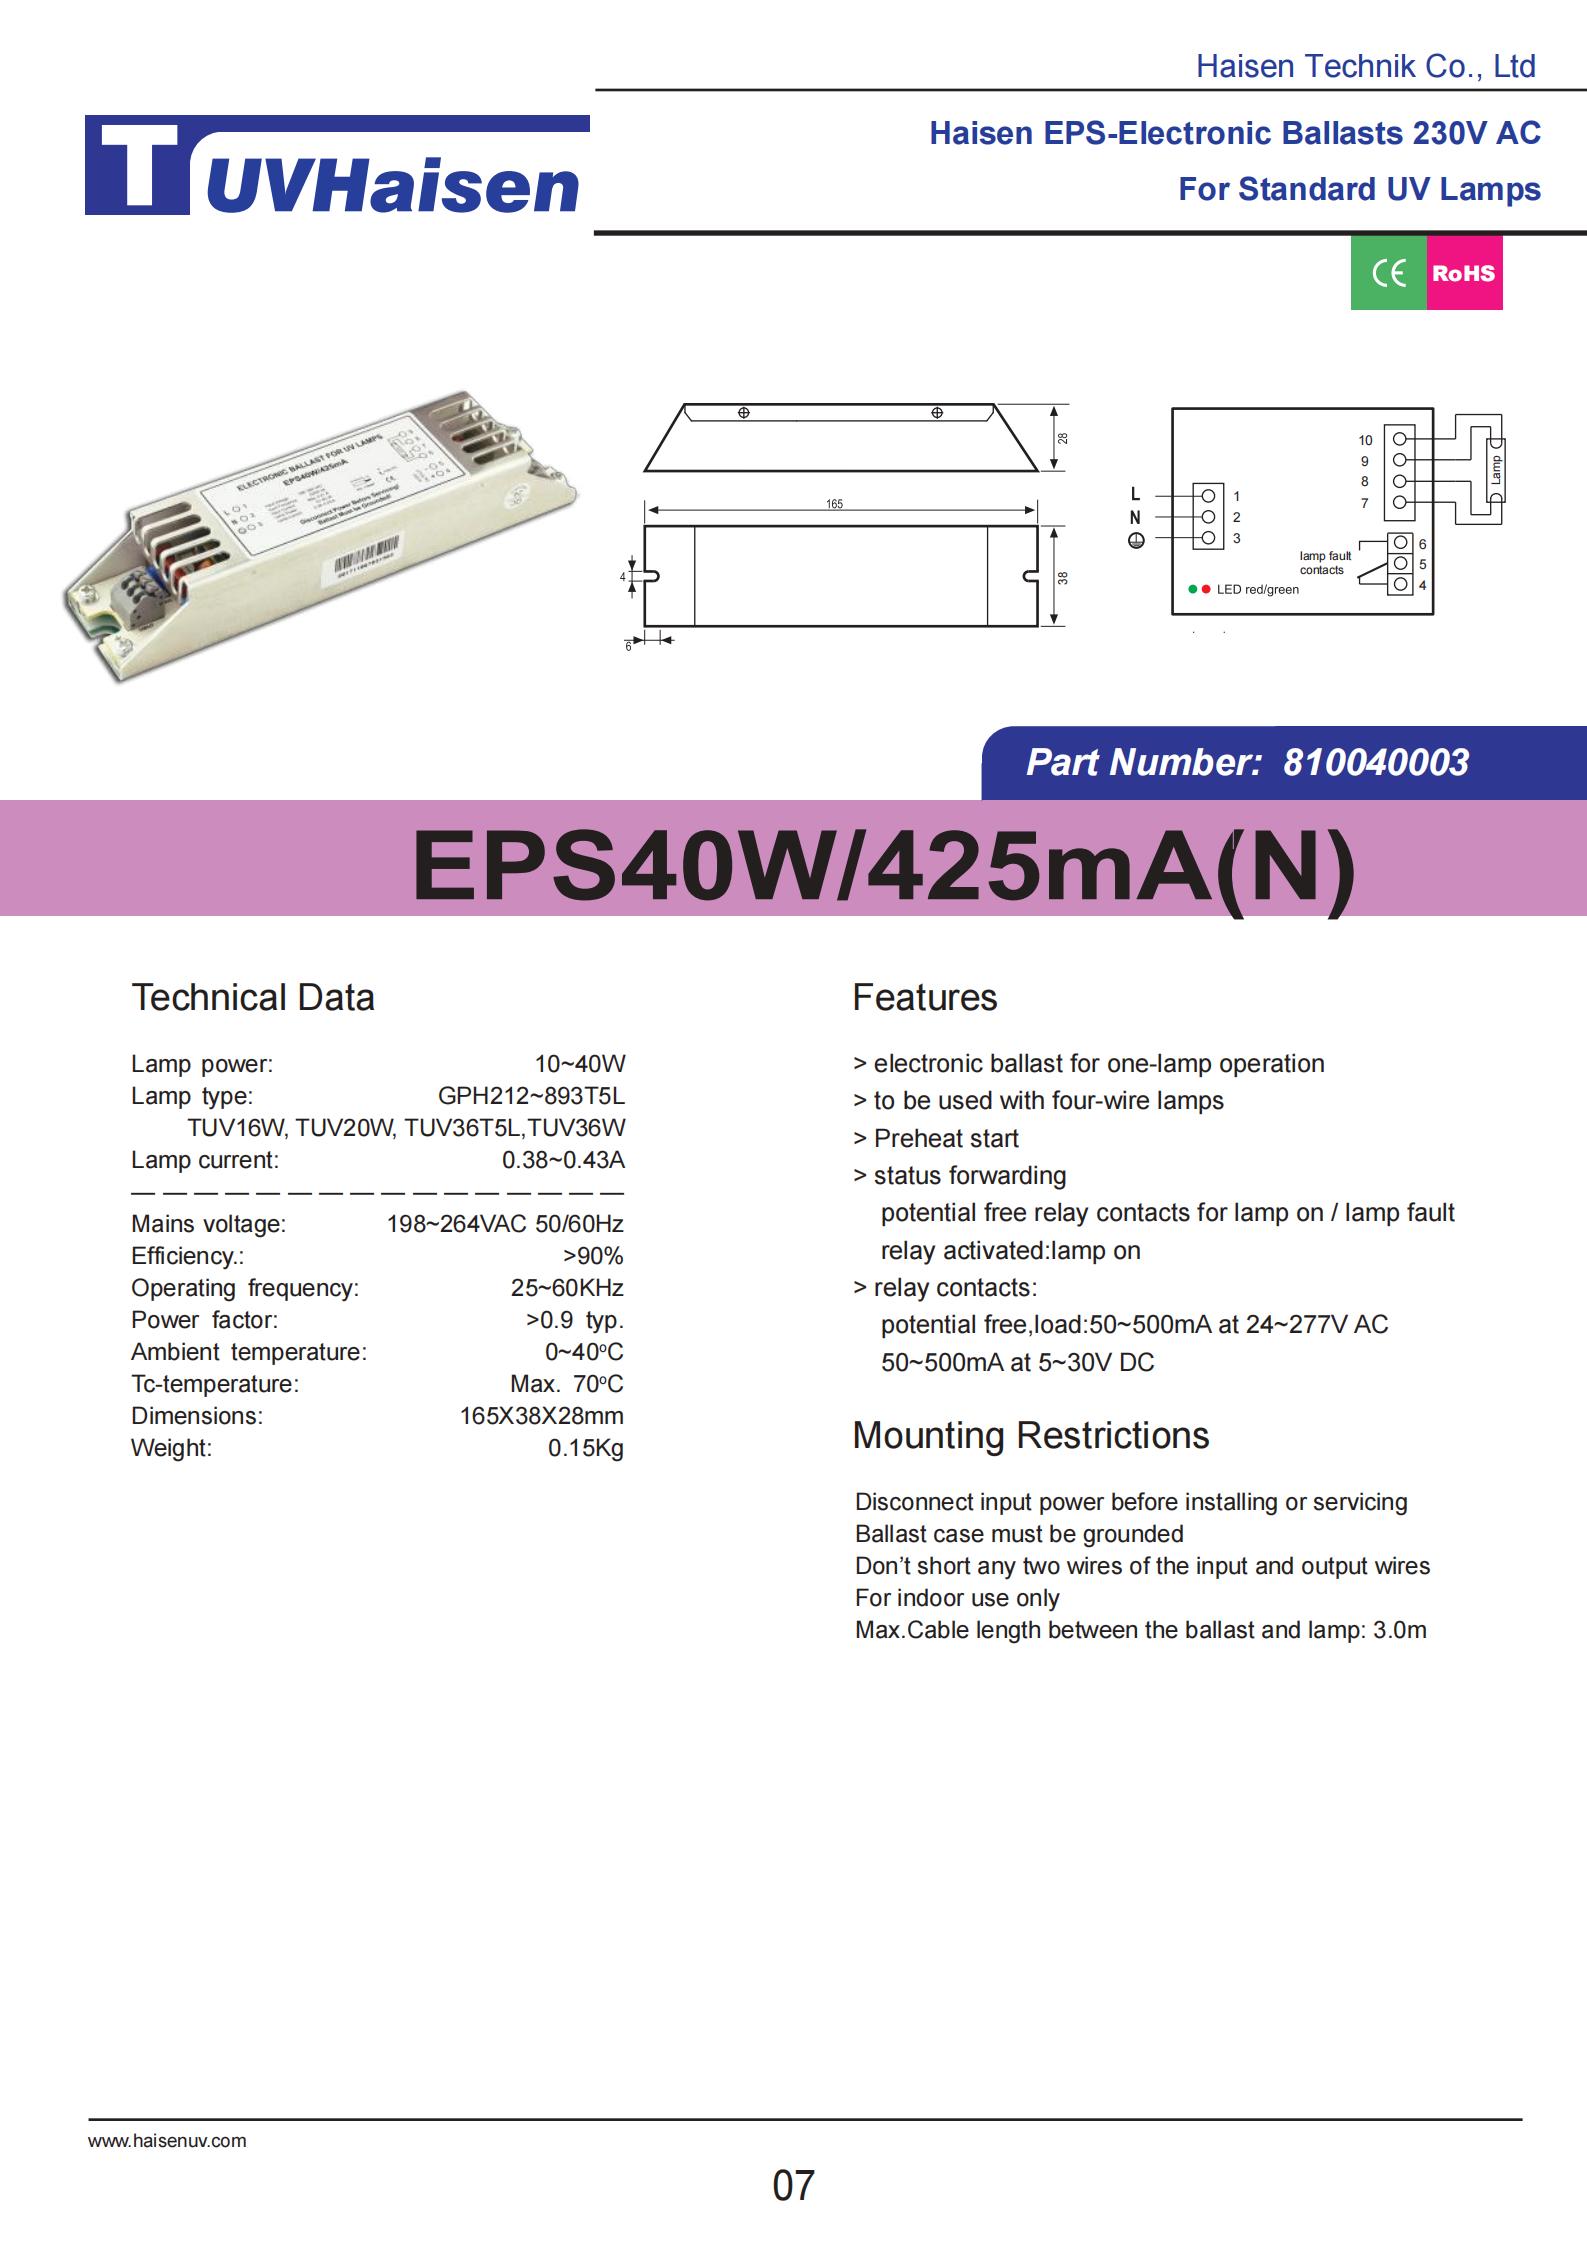  ultravoilet ballast EPS40W/425mA/N FOR UV LIGHTS